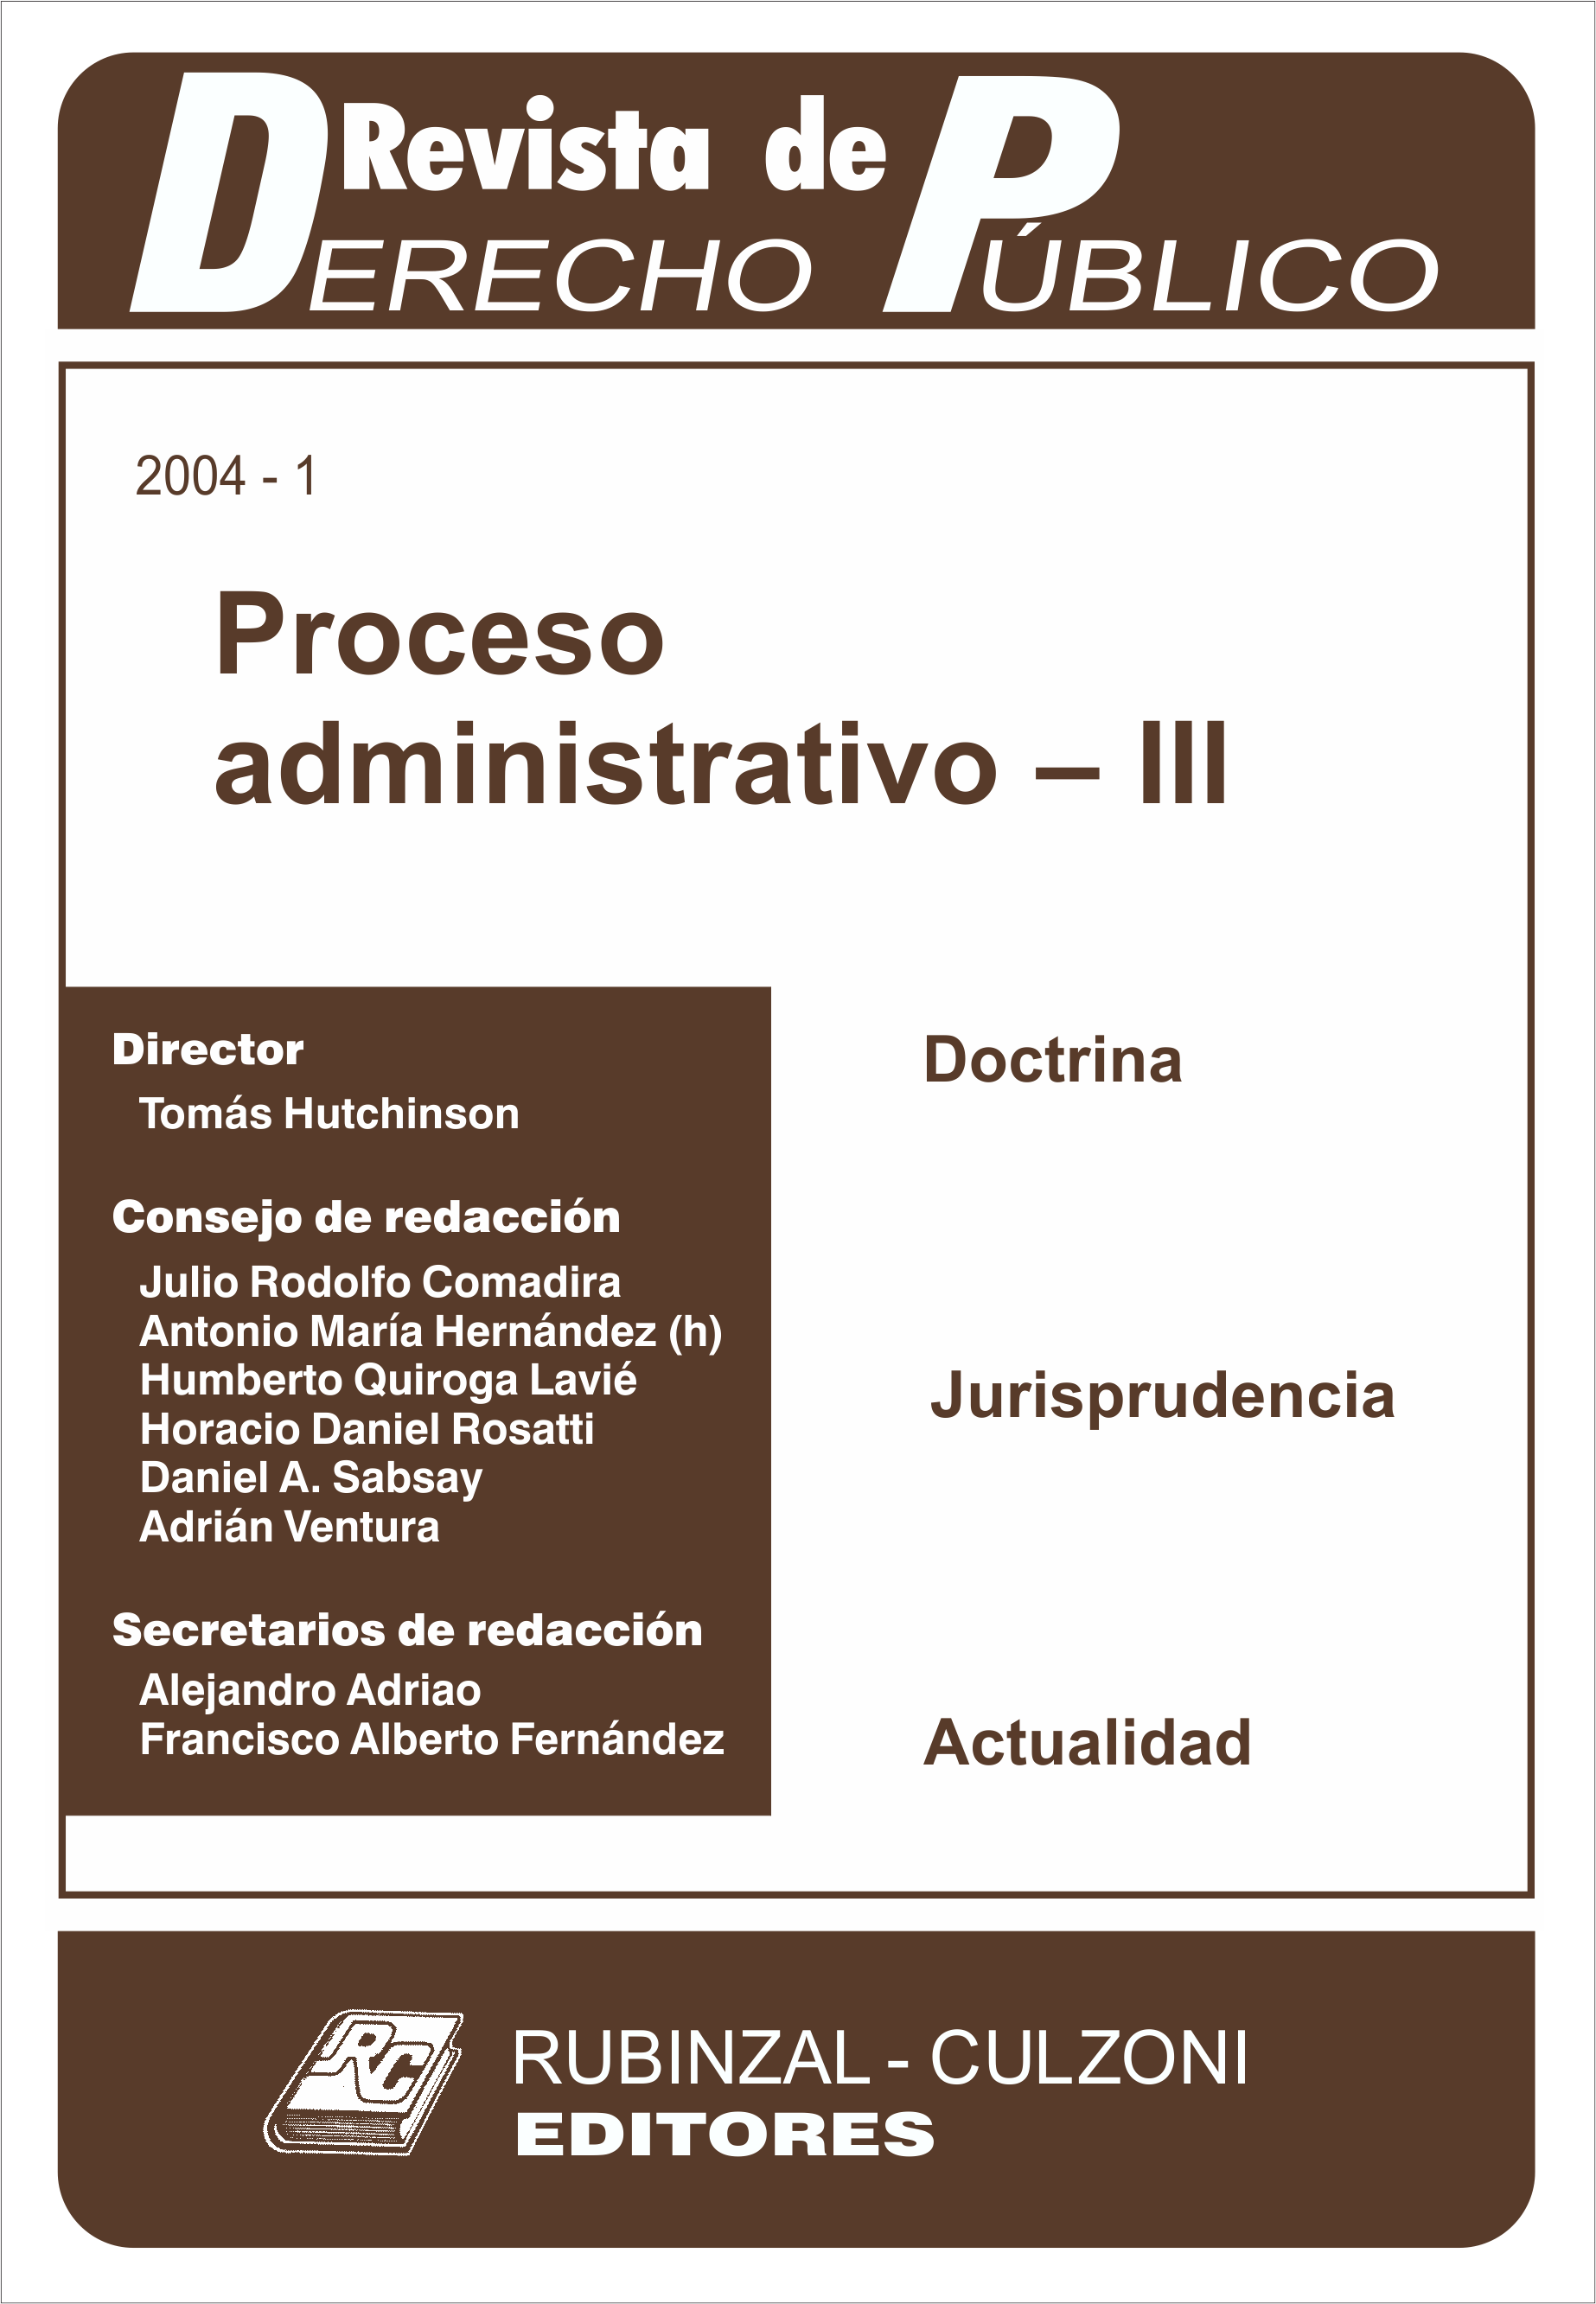 Revista de Derecho Público - Proceso administrativo - III